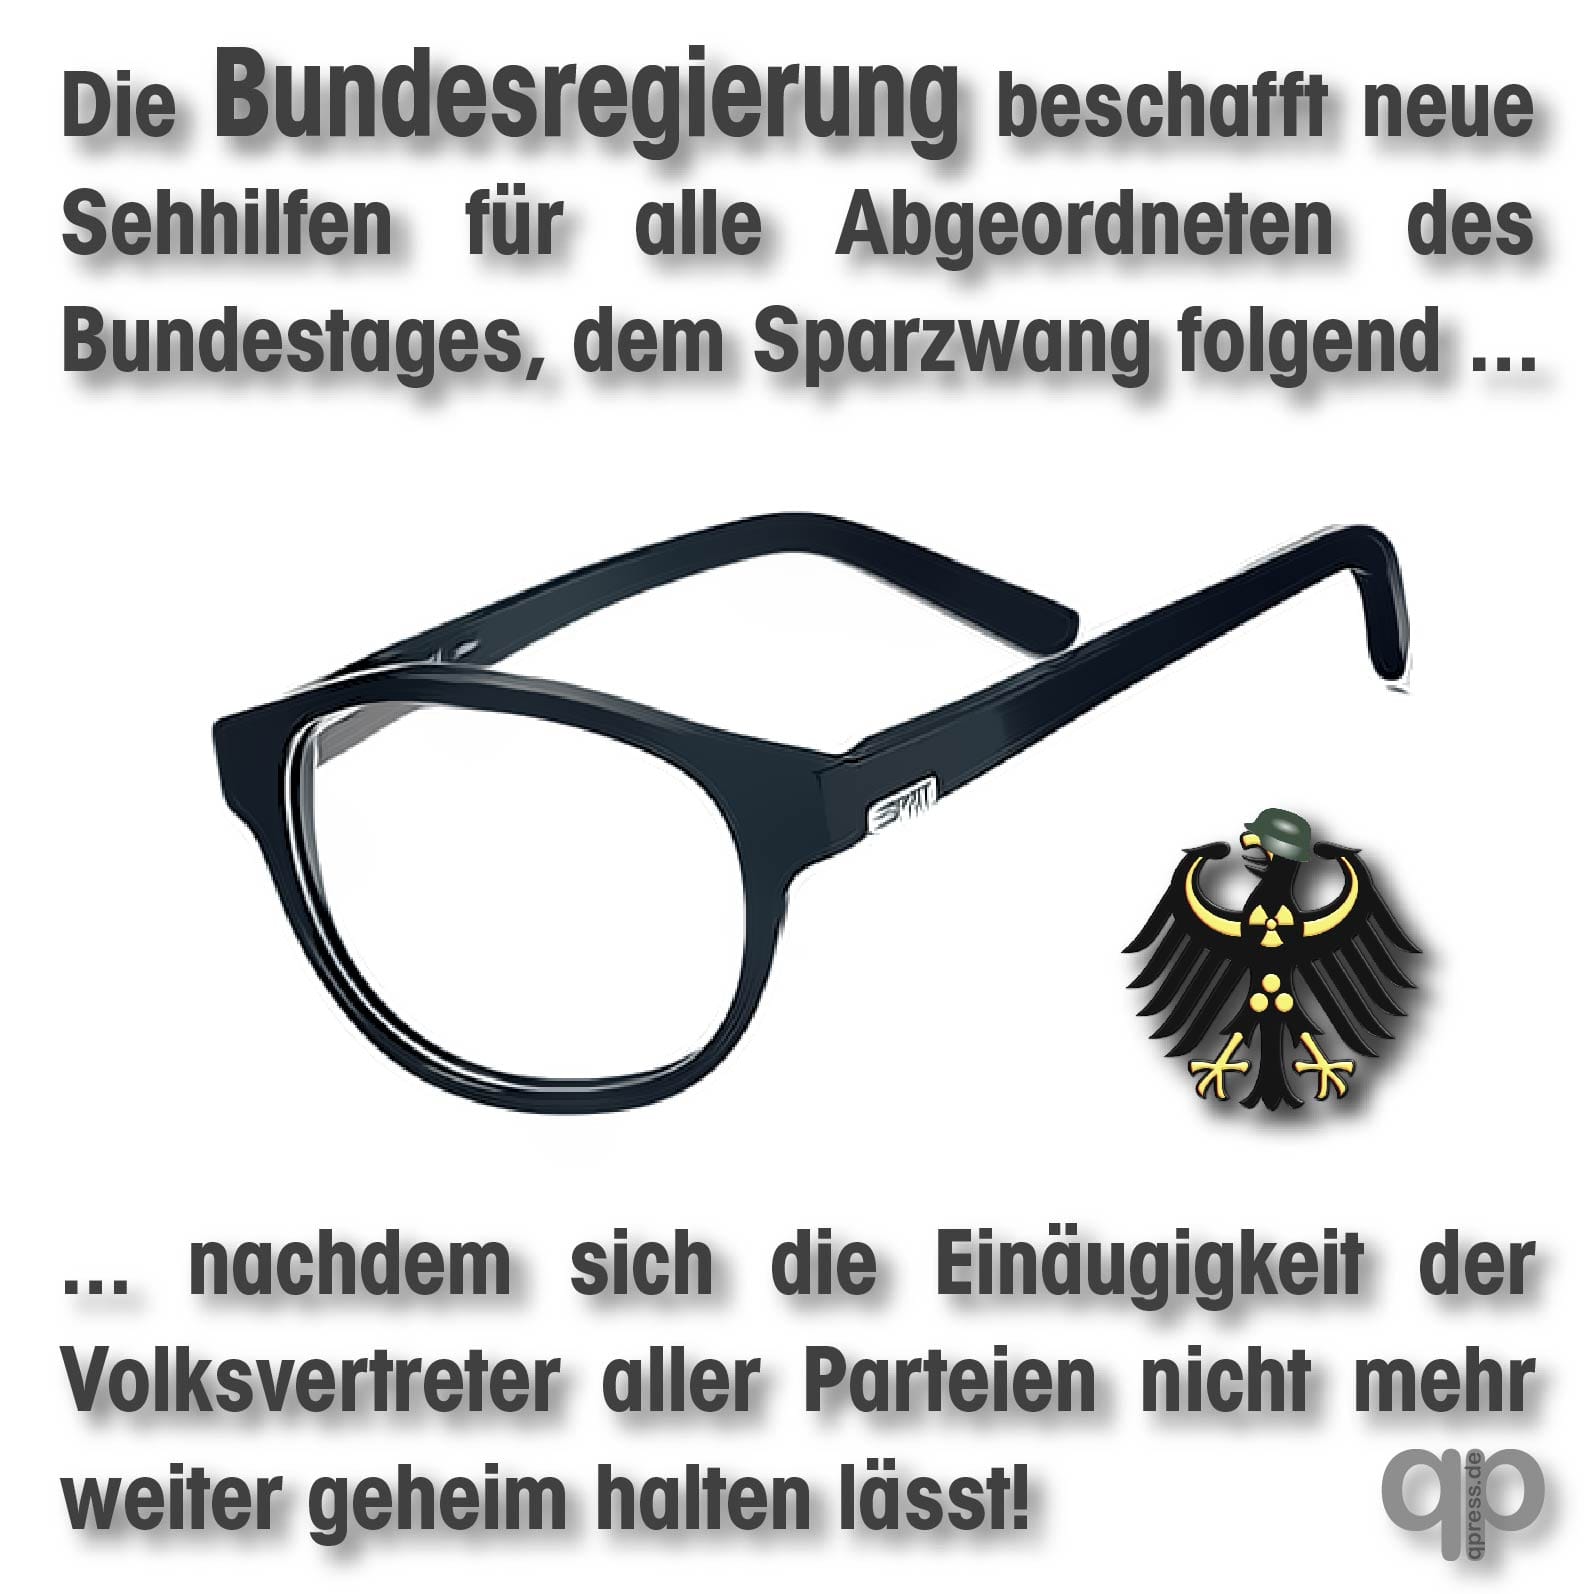 Bundestag-beschafft-neue-Sehhilfen-fuer-Abgeordnete-und-Politiker-Brille-Durchblick-einaeugigkeit-monokular-partielle-blindheit